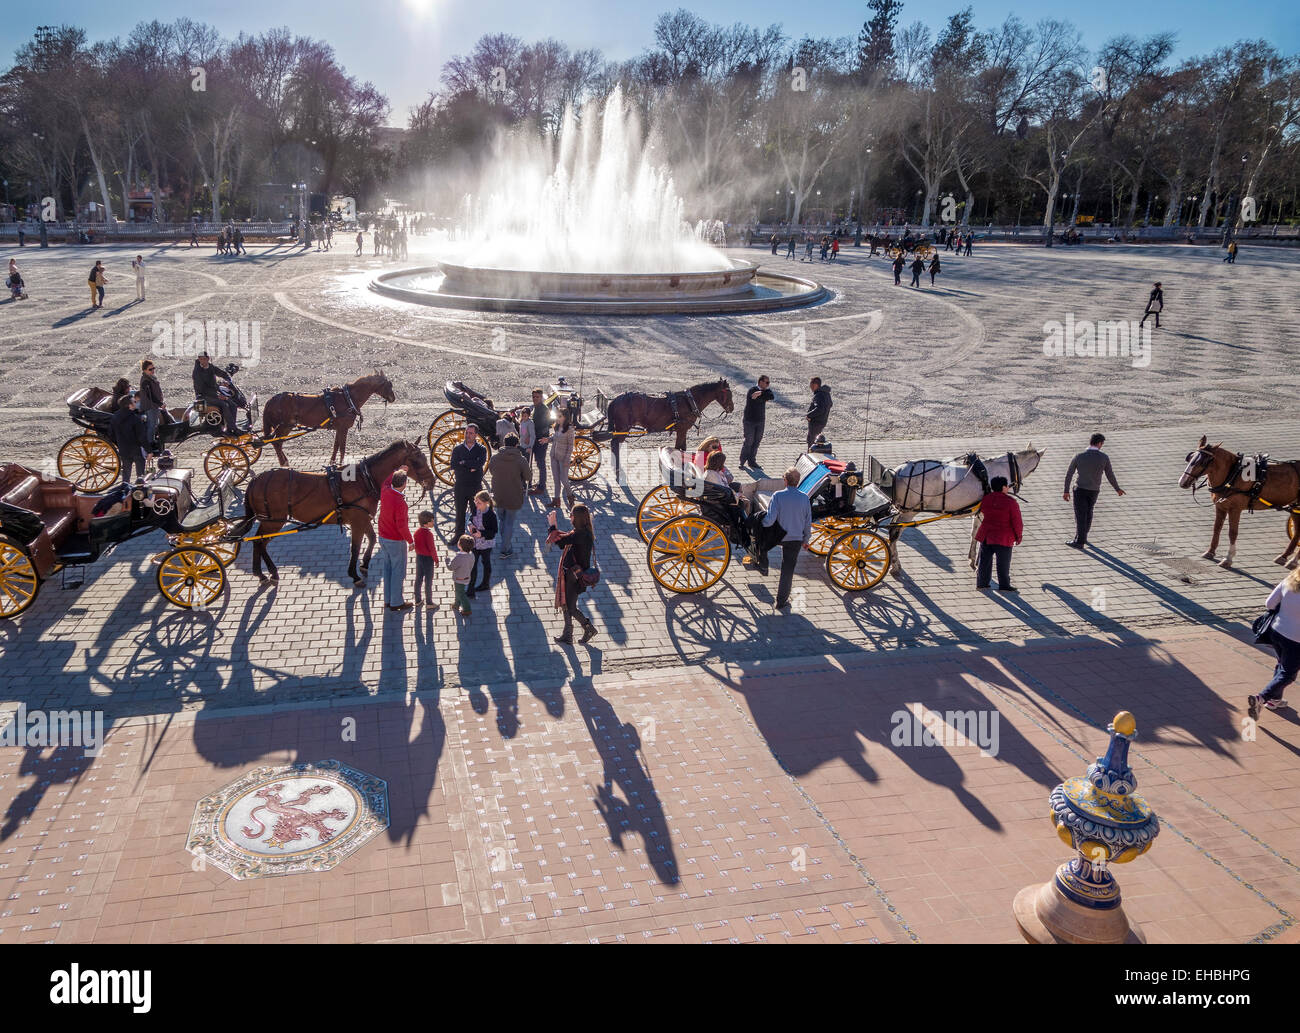 Plaza de Espana, Sevilla, Sevilla, Brunnen mit Pferdekutschen, Touristen touristische Kutsche fahren im Parque de Maria Luisa Park Stockfoto